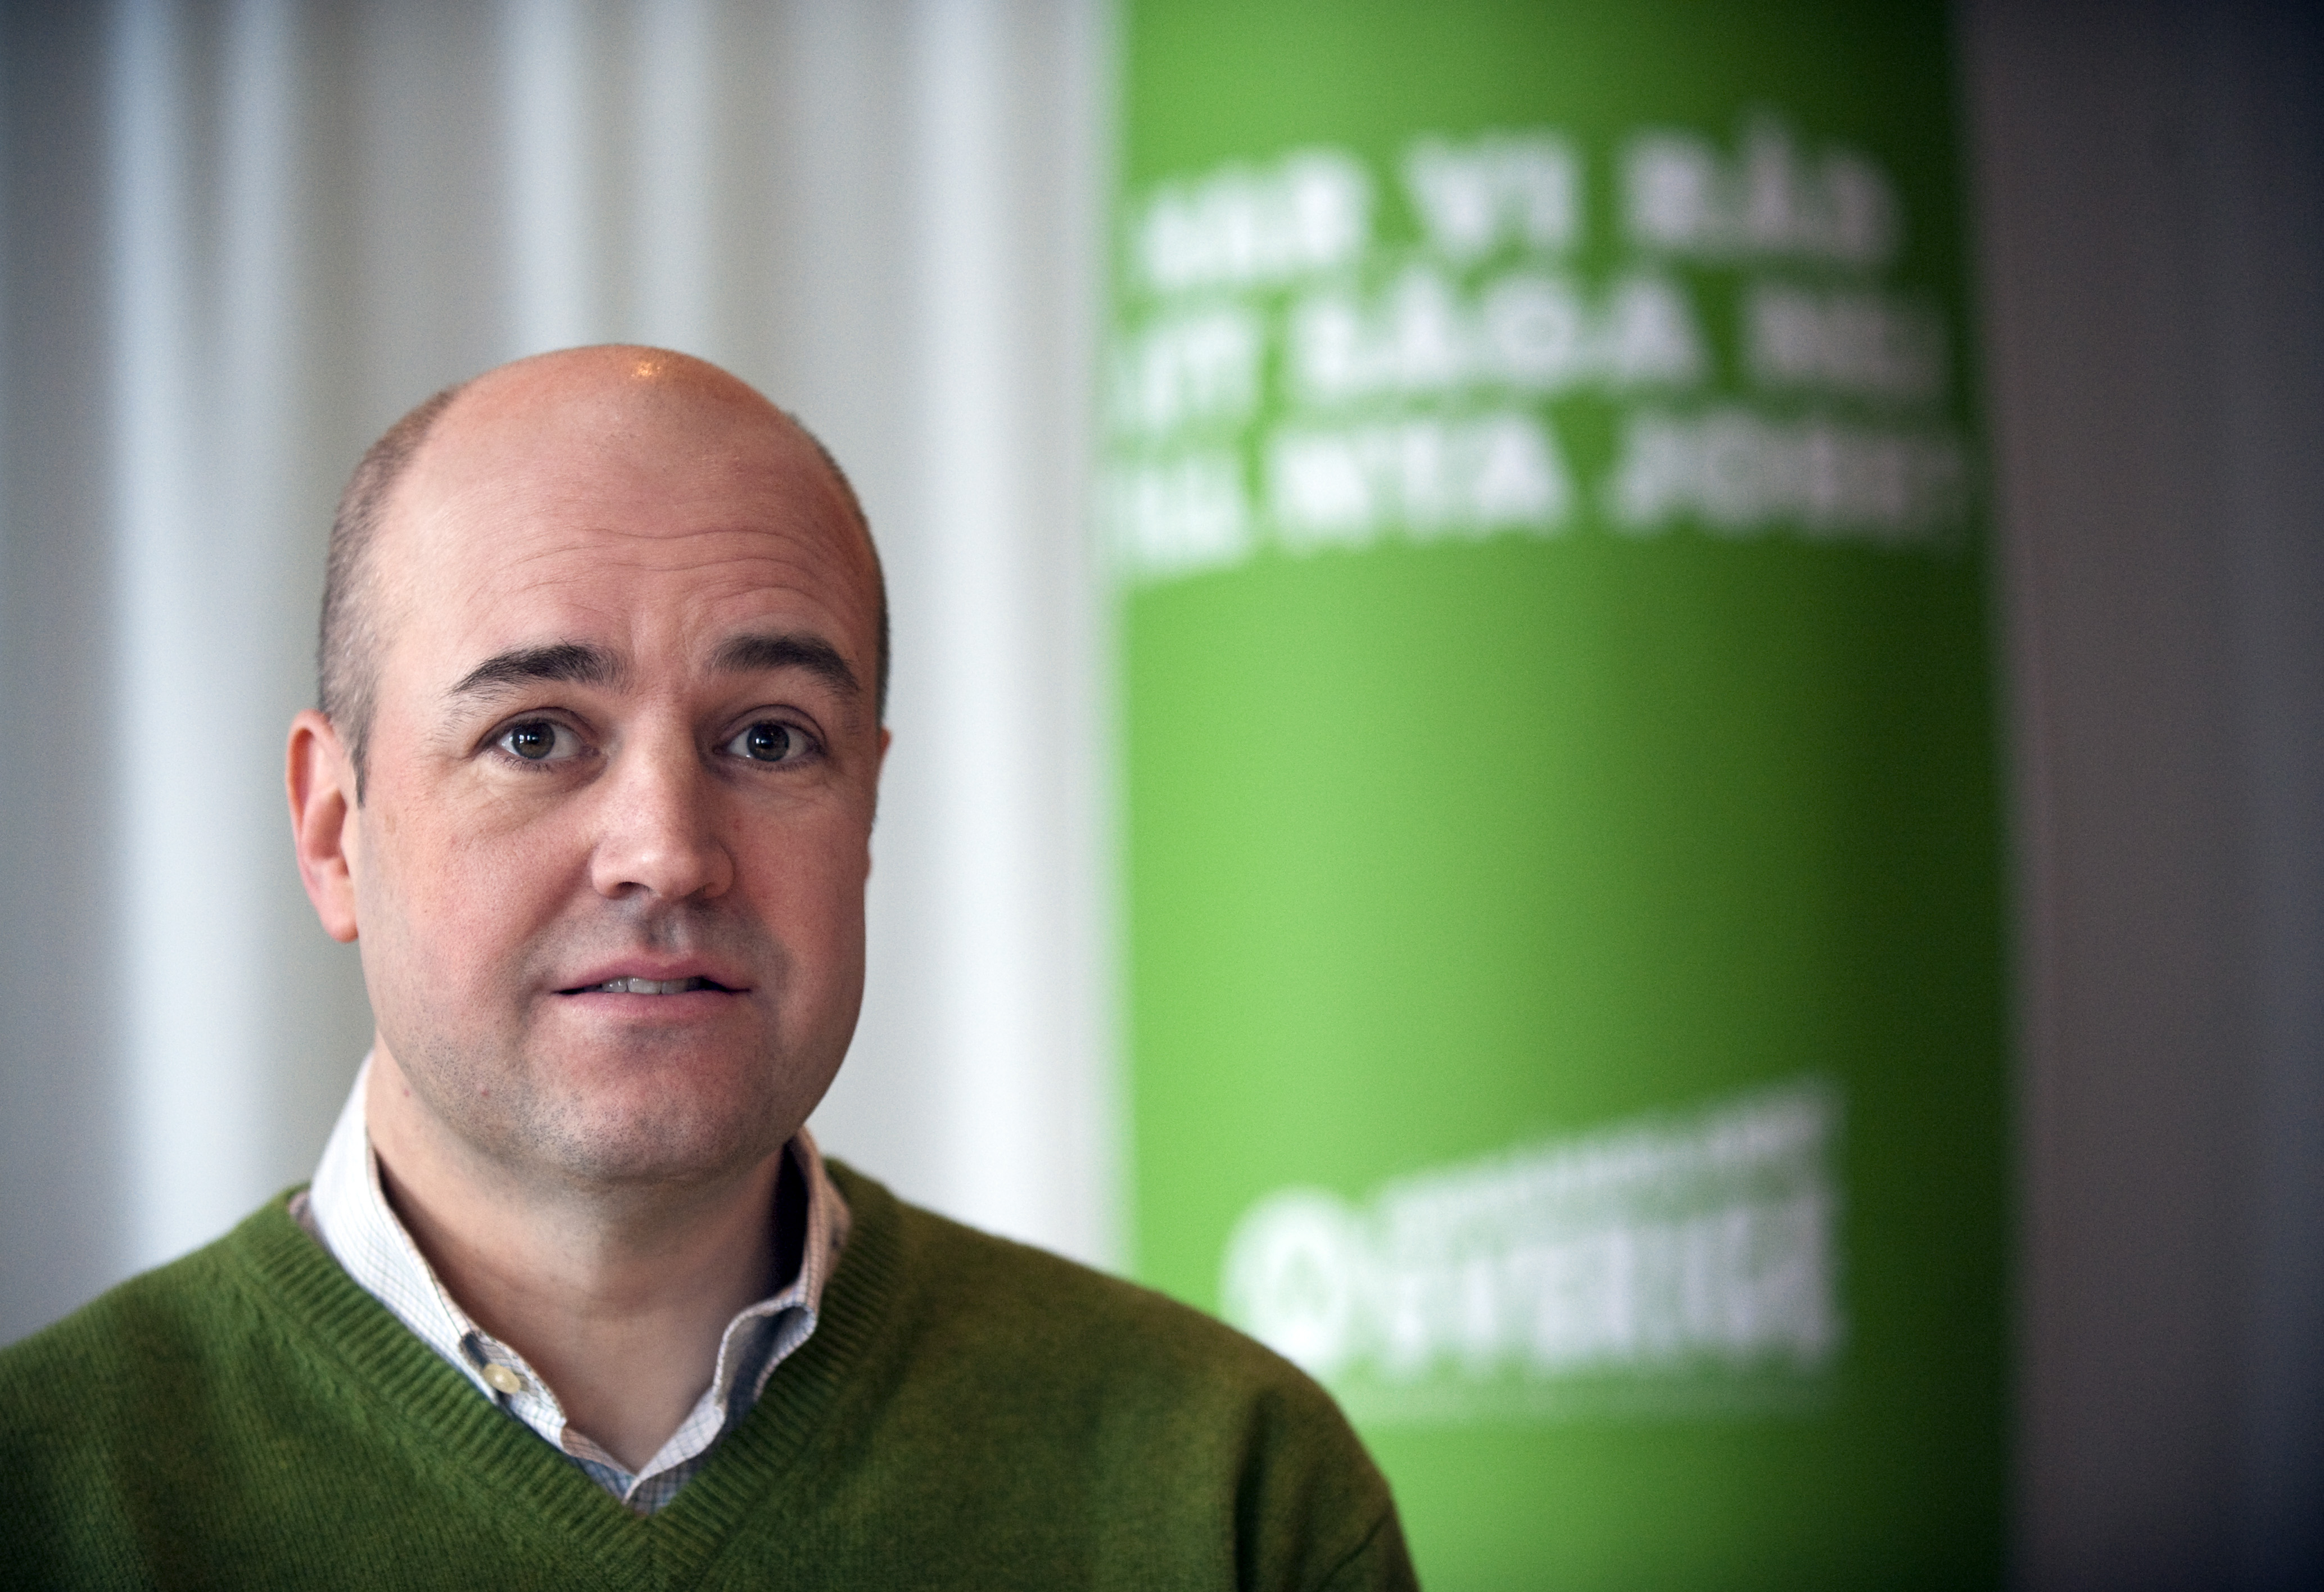 Det är valdagen som avgör om rut-avdraget försvinner, säger statsminister Fredrik Reinfeldt enligt Expressen. 